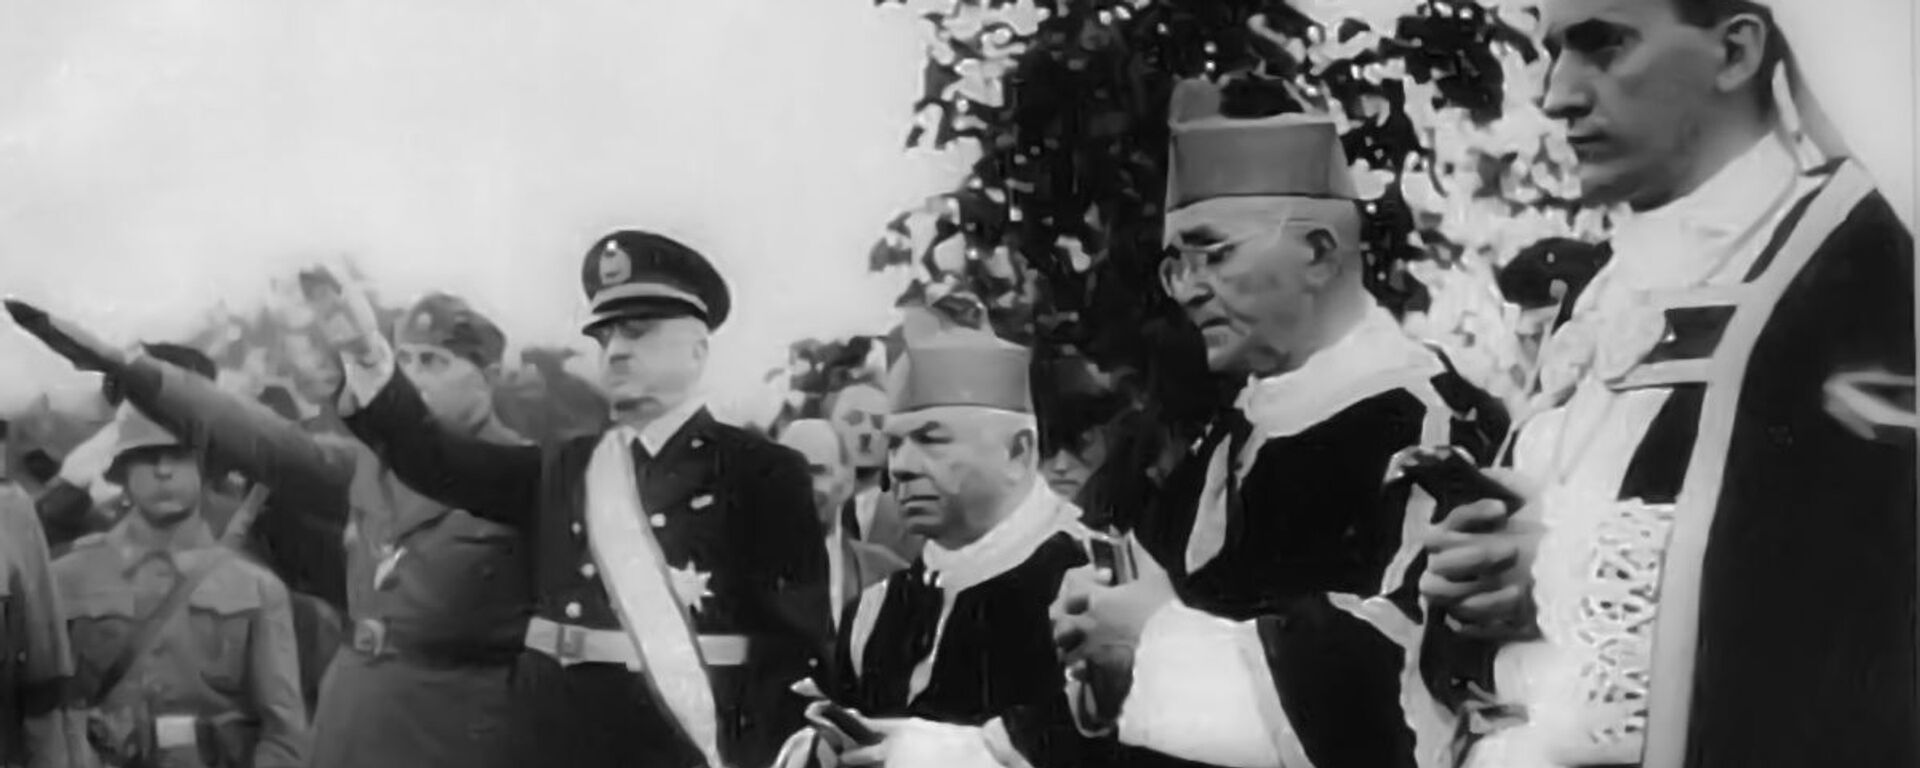 Alojzije Stepinac, hrvatksi kardinal, sa predstavnicima nacista u Drugom svetskom ratu. - Sputnik Srbija, 1920, 18.03.2019